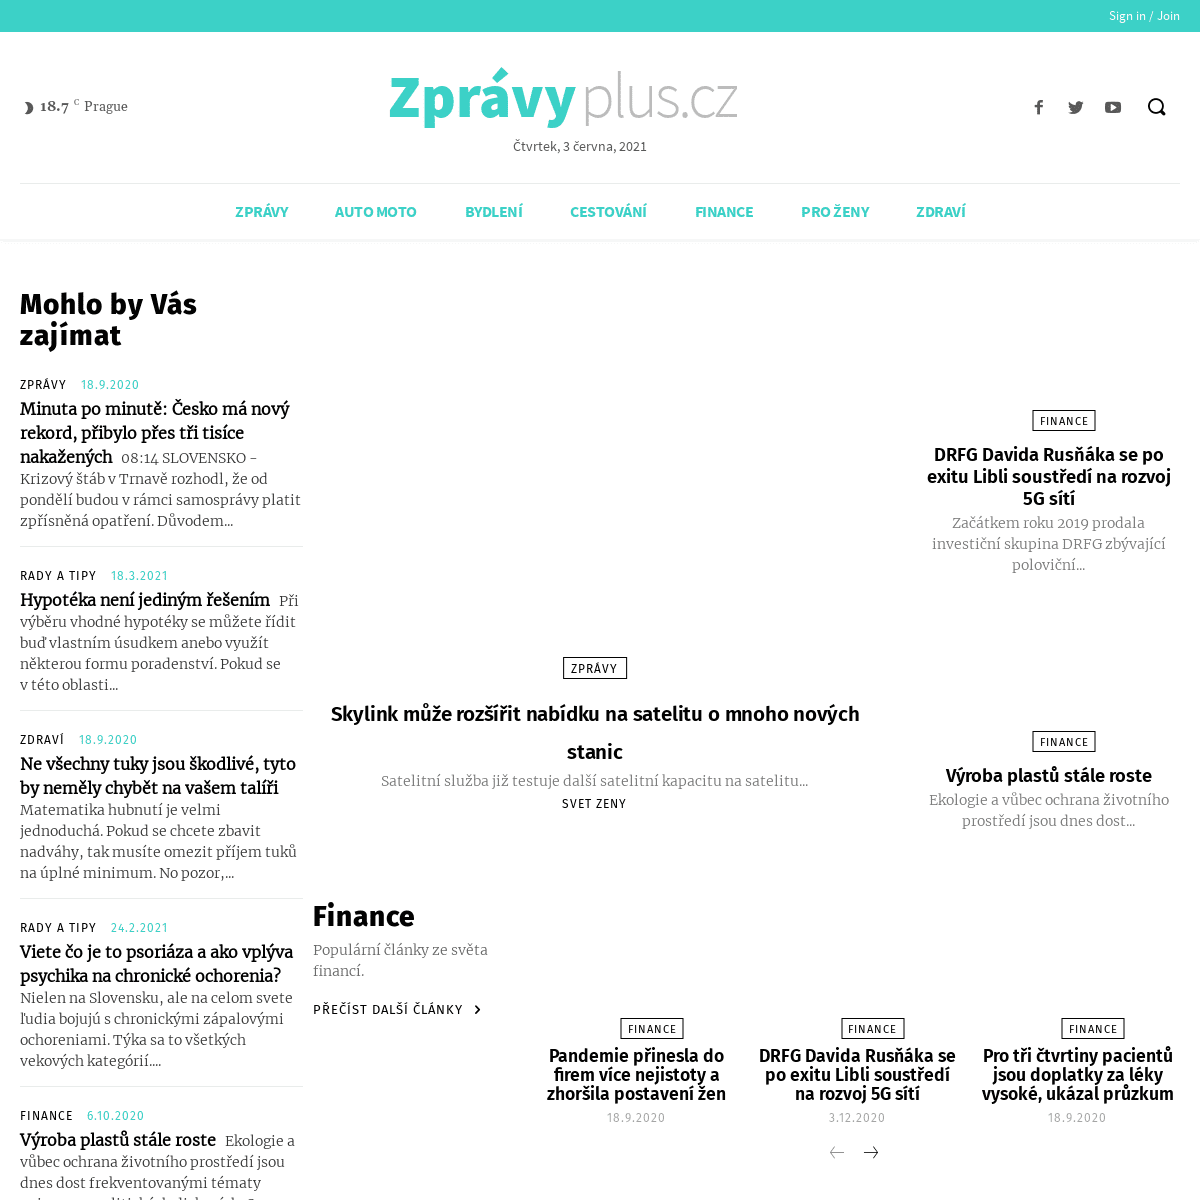 A complete backup of https://zpravyplus.cz